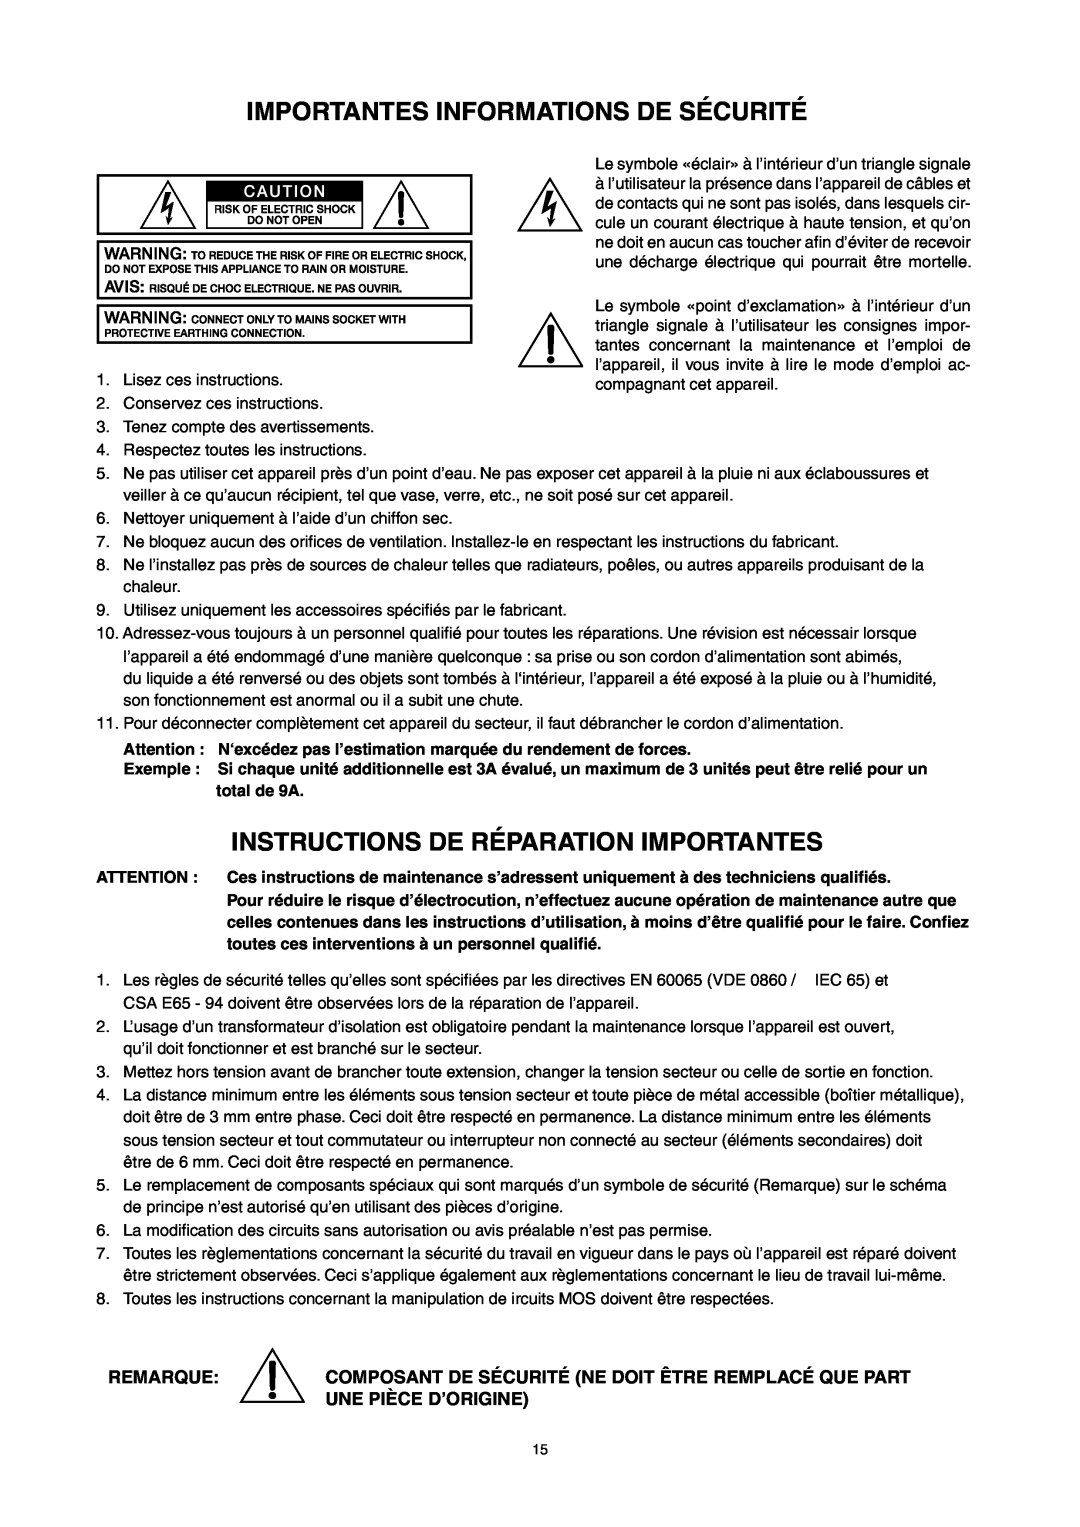 Dynacord M 15 Importantes Informations De Sécurité, Instructions De Réparation Importantes, Remarque, Une Pièce D’Origine 